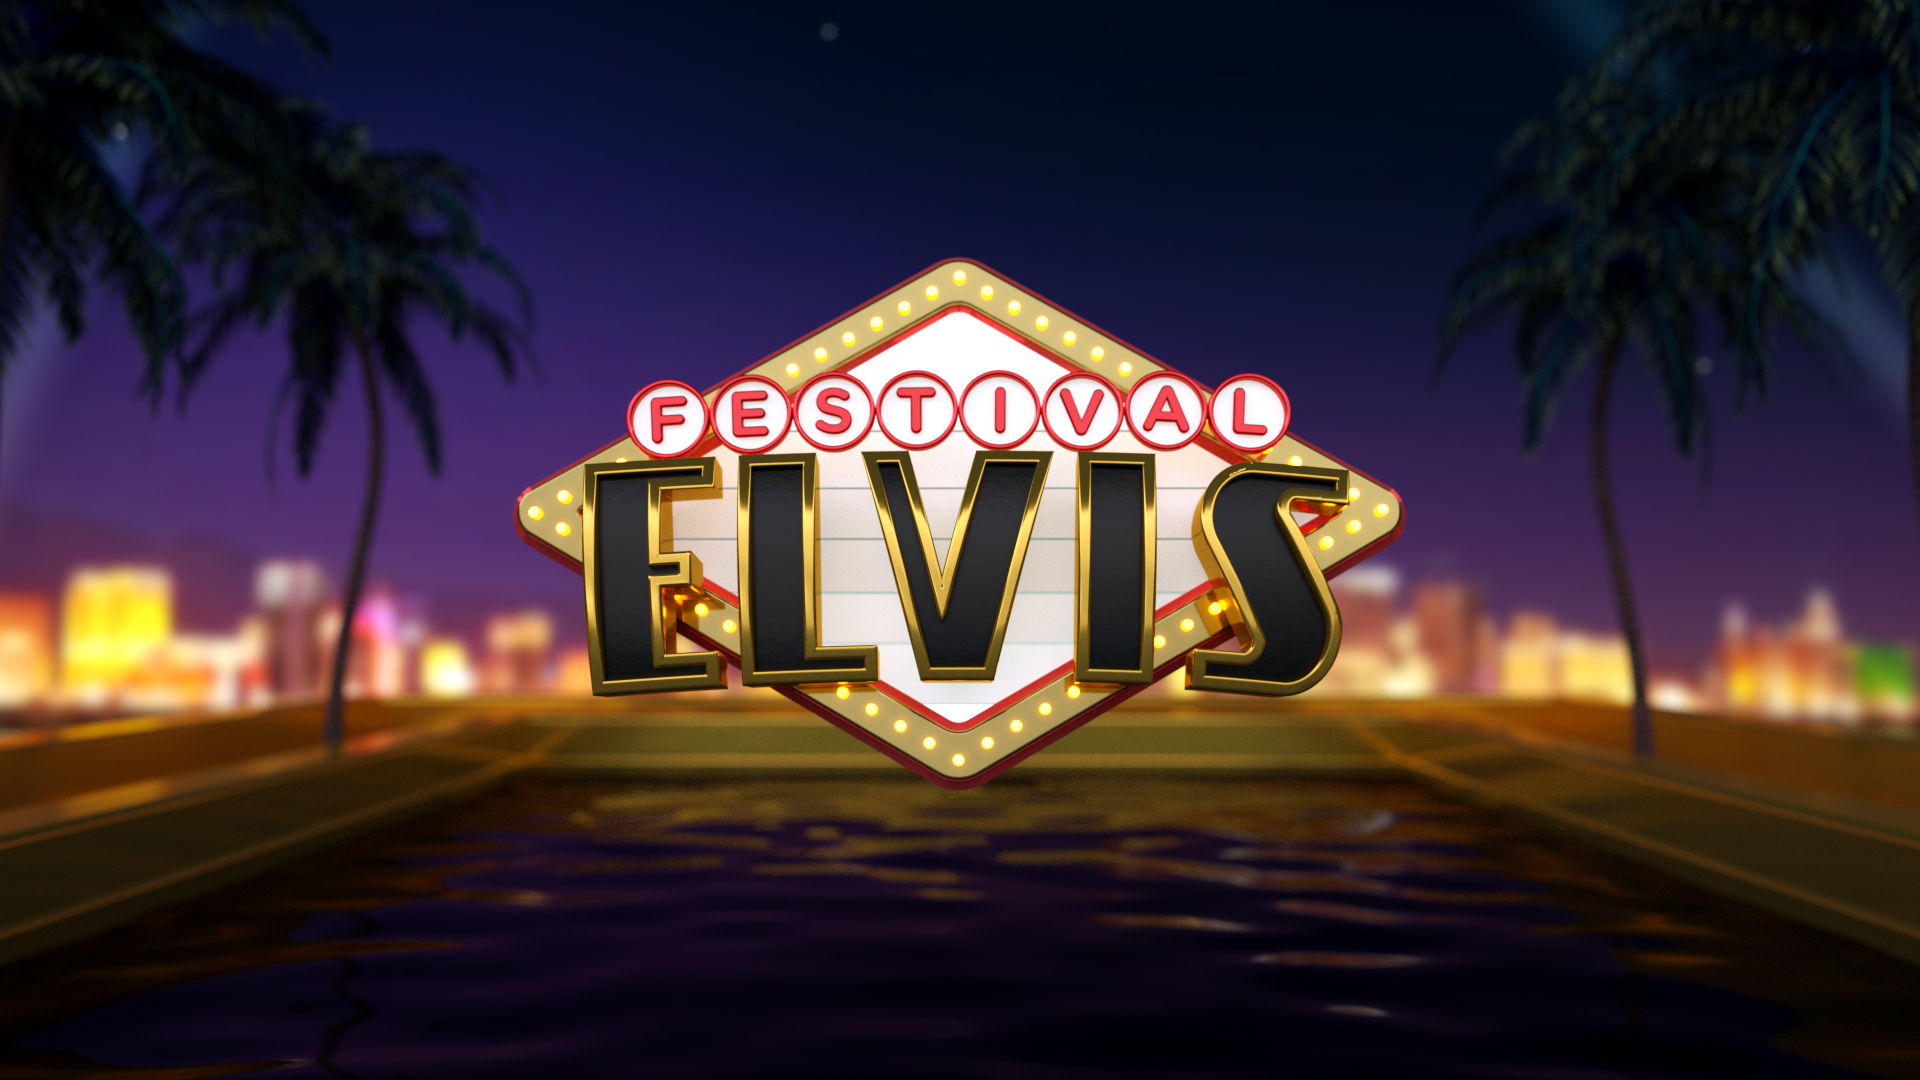 Logo do Festival Elias (Divulgação / TV Aparecida)